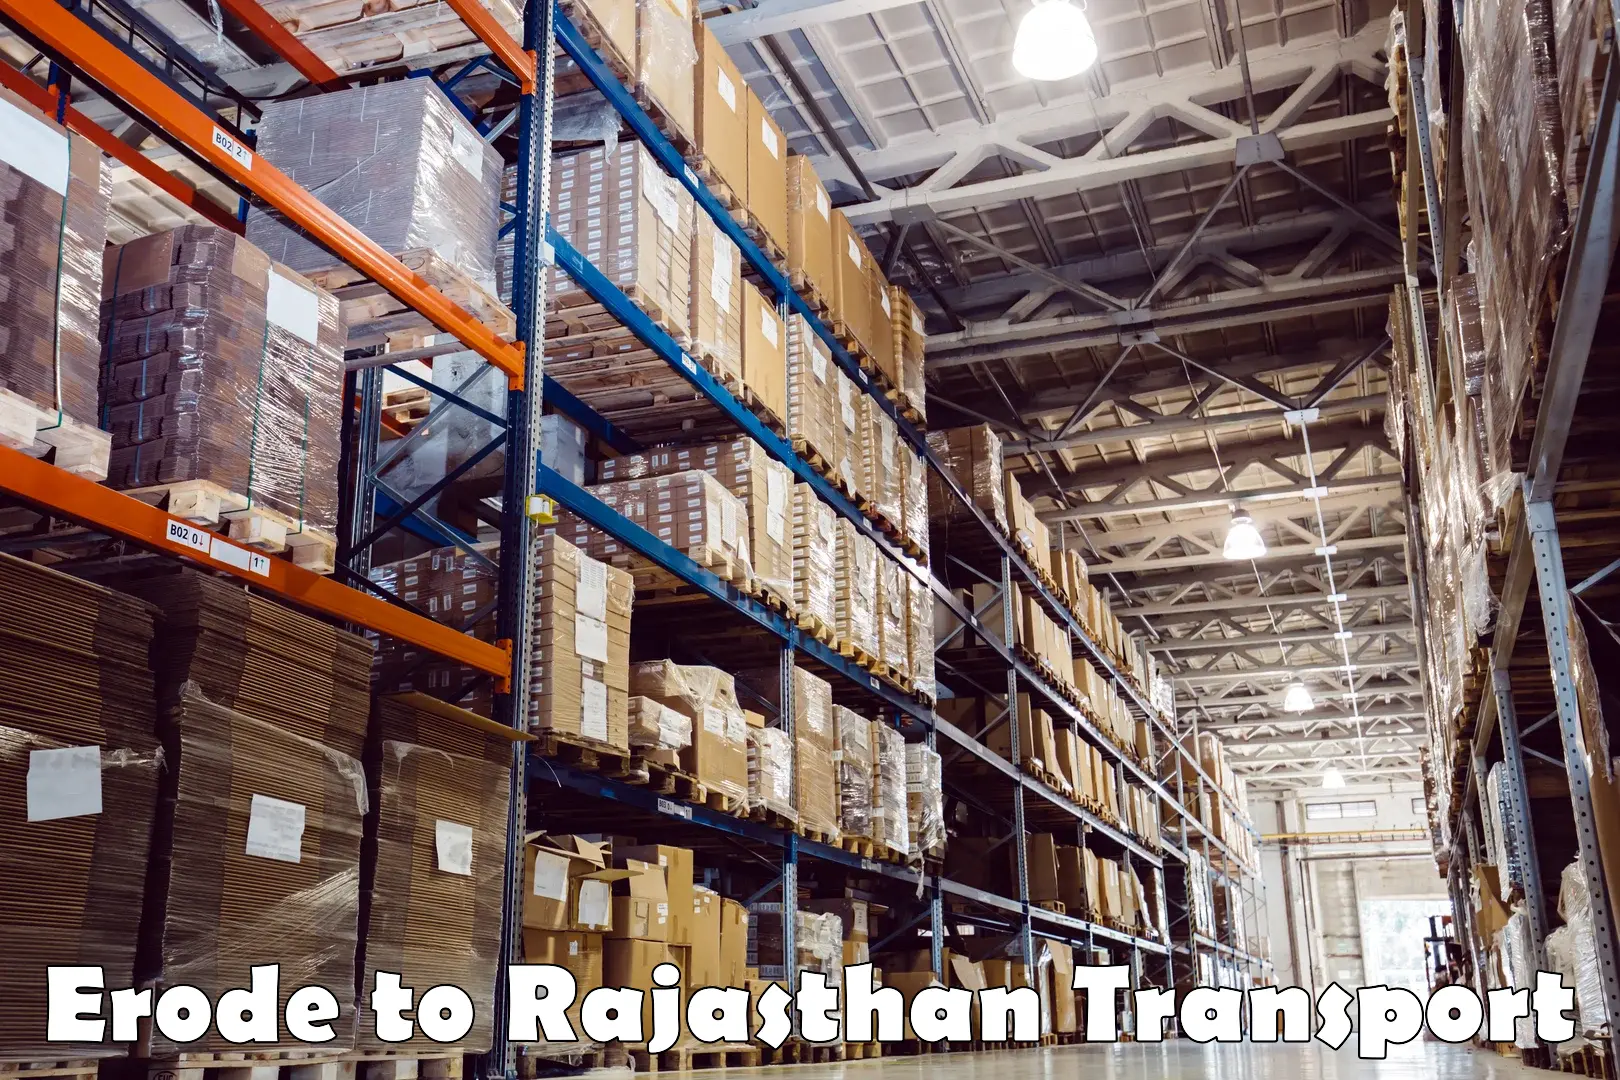 Shipping partner Erode to Rajasthan